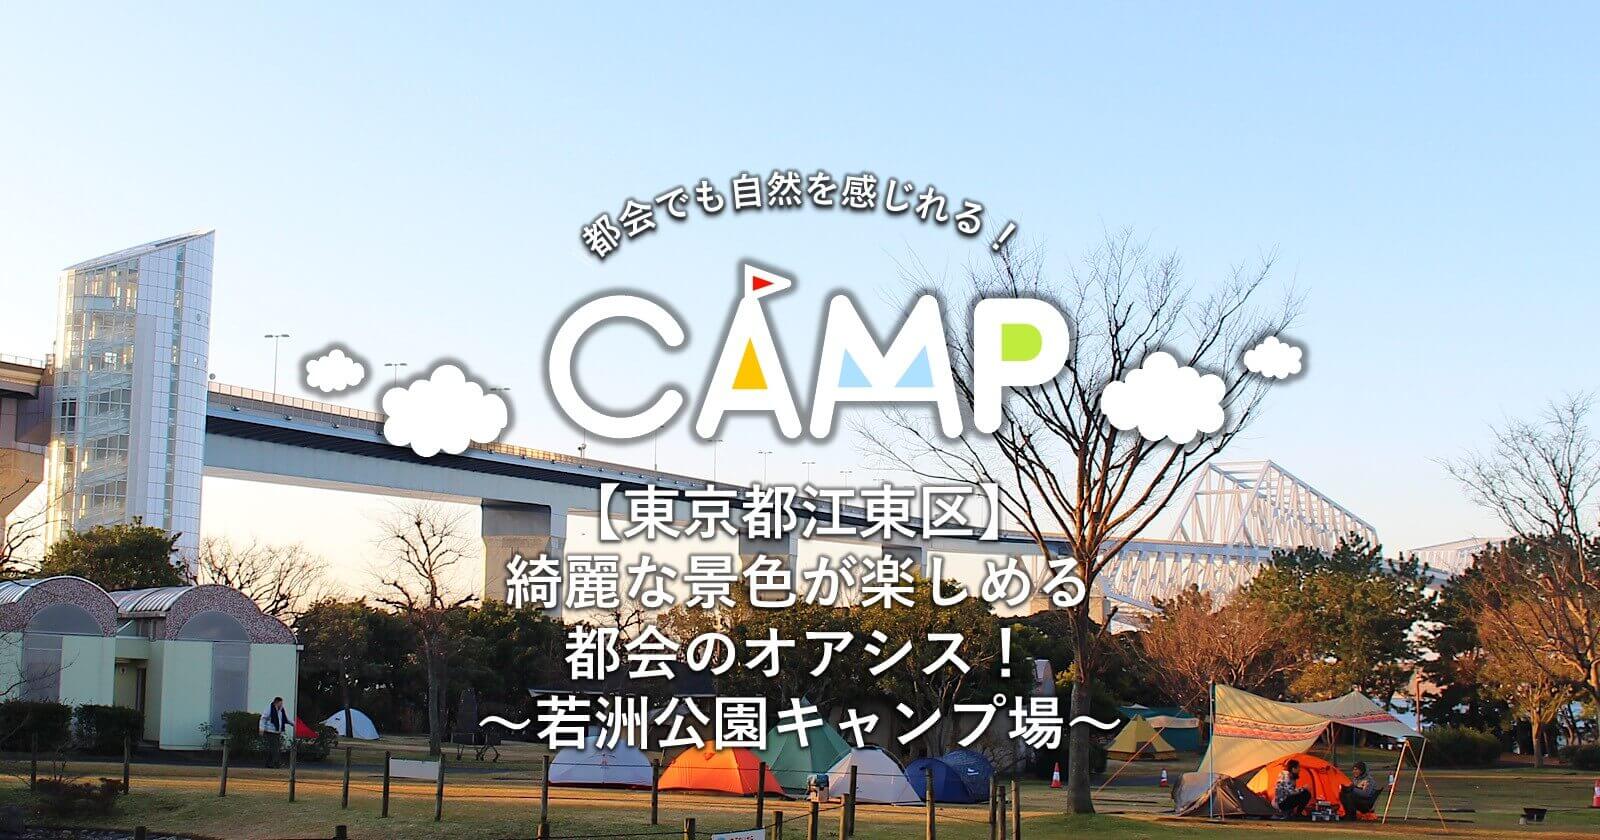 東京都江東区 綺麗な景色が楽しめる都会のオアシス 若洲公園キャンプ場 キャンプ アウトドアのtakibi タキビ